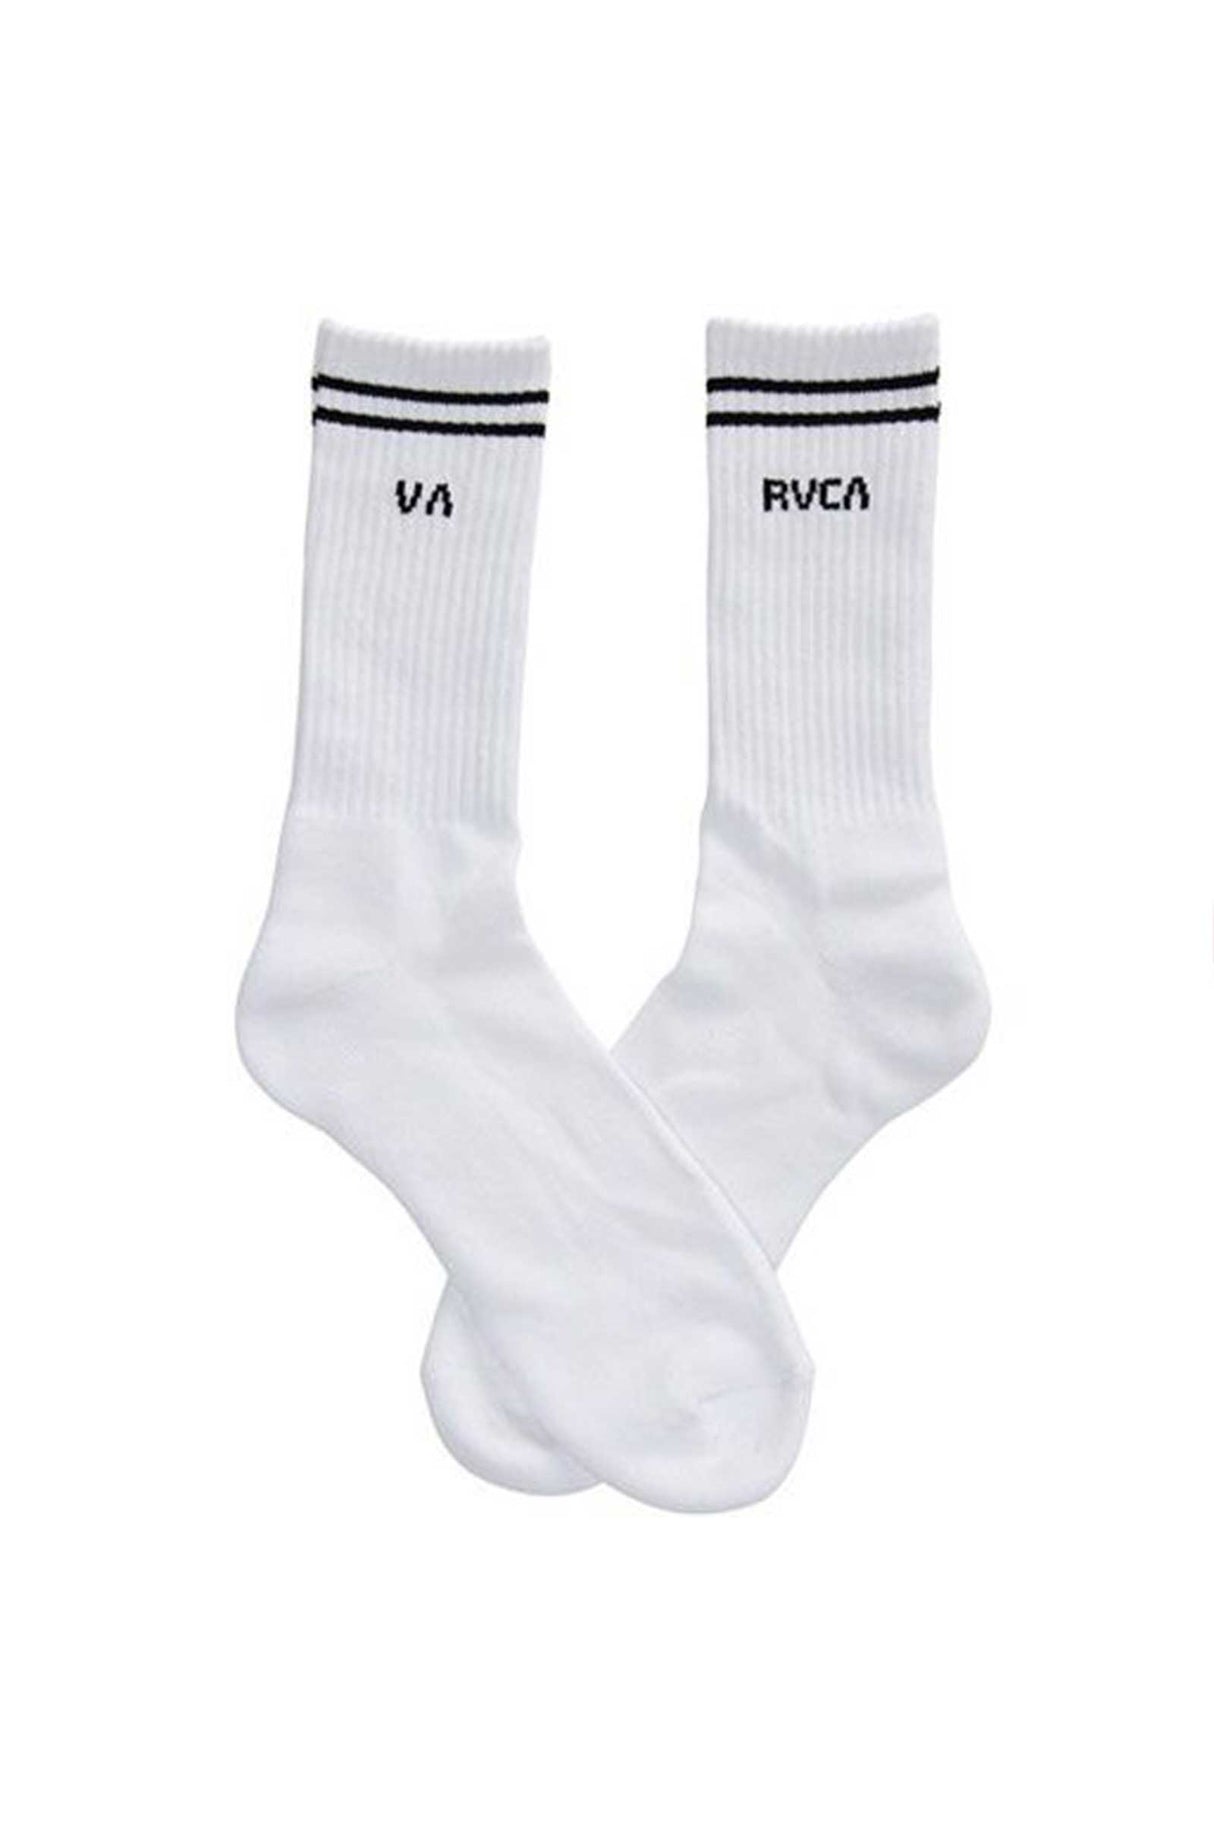 Union Sock - 5 Pack - White